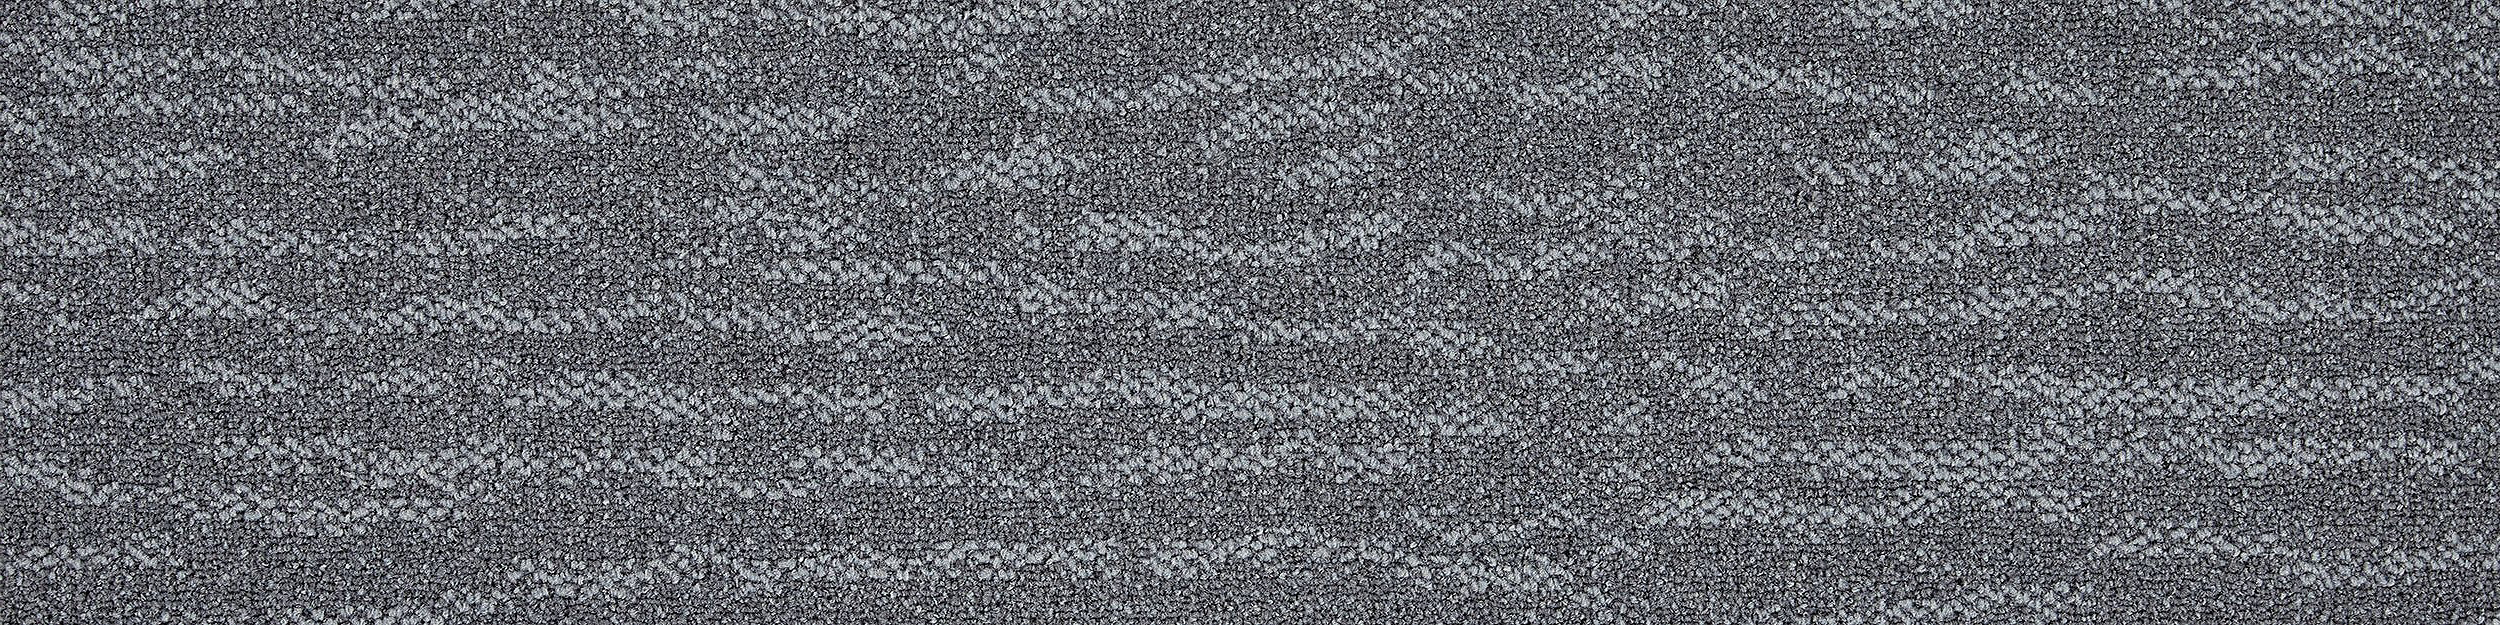 Works Fluid Carpet Tile In Concrete image number 8